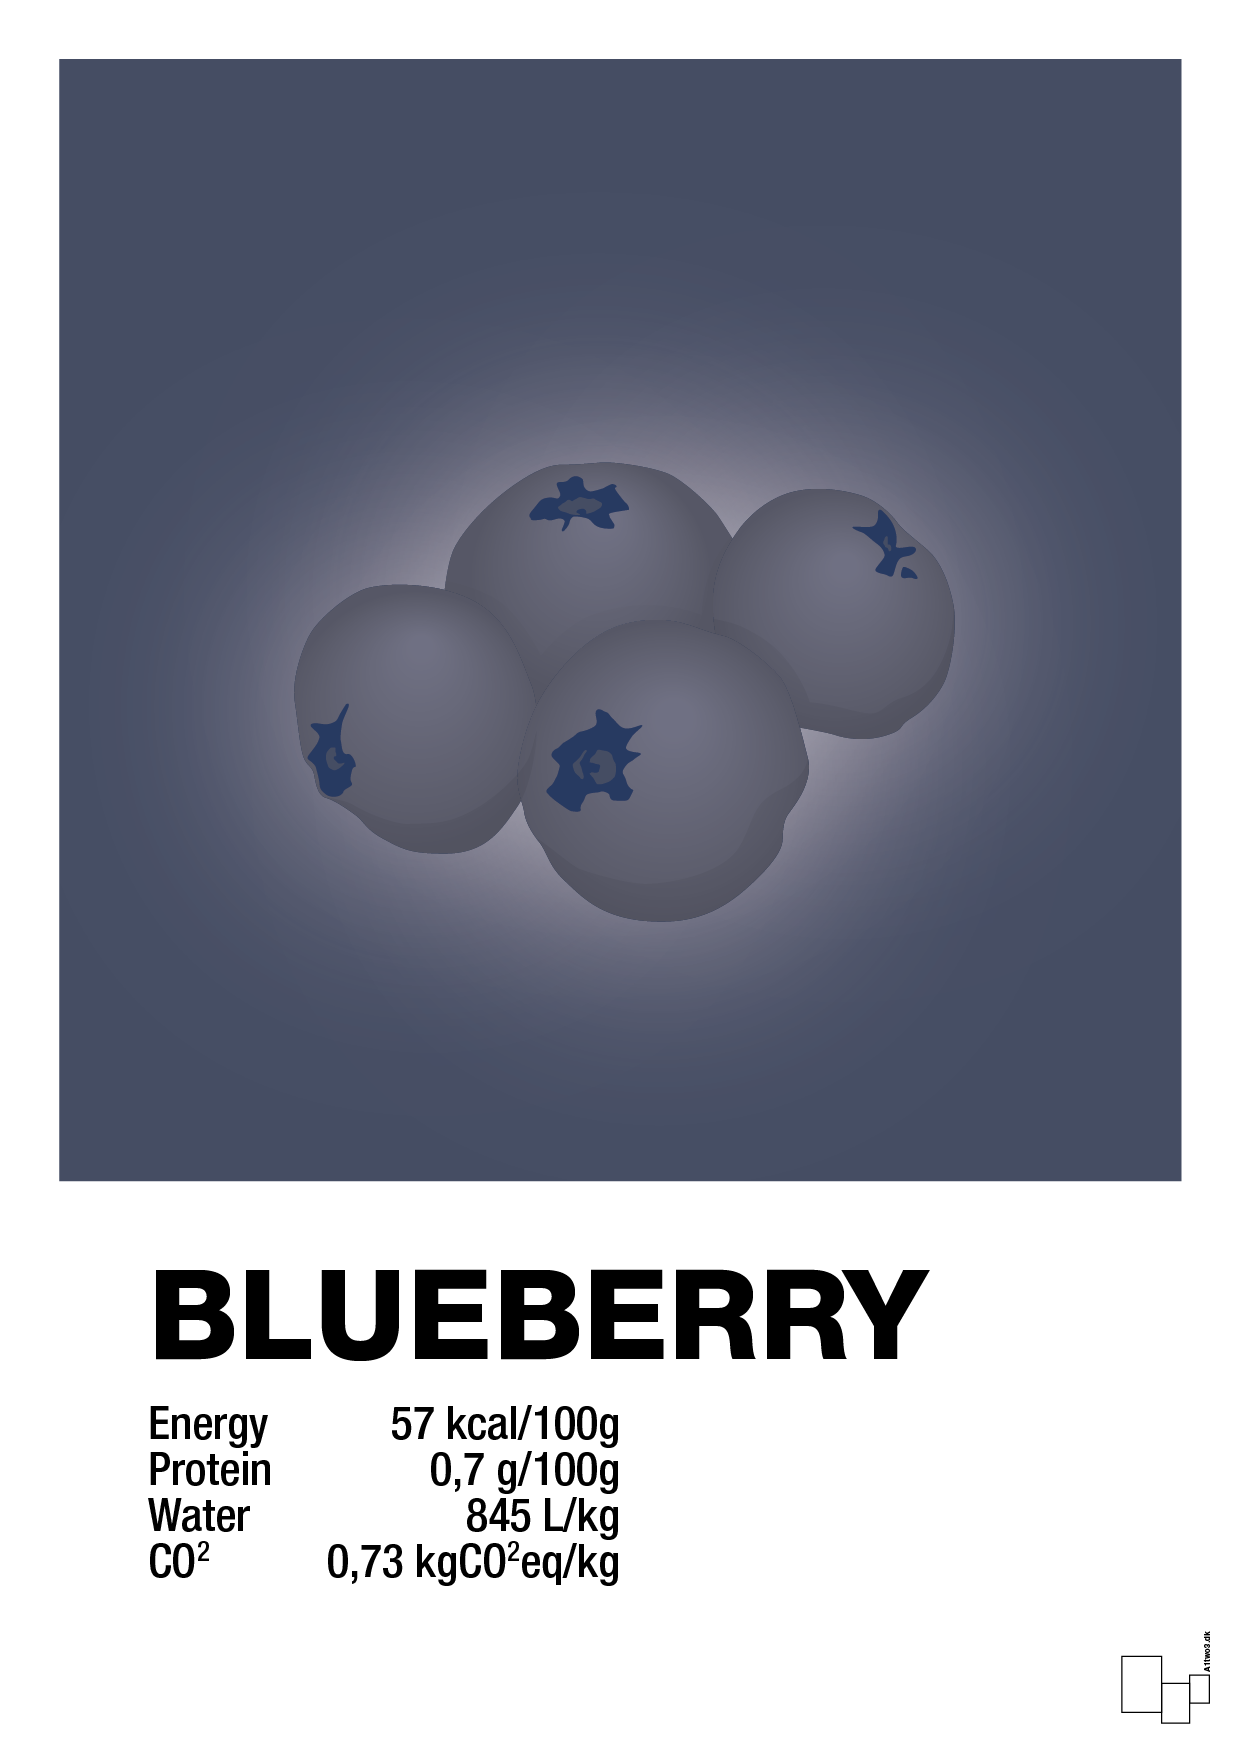 blueberry nutrition og miljø - Plakat med Mad & Drikke i Petrol